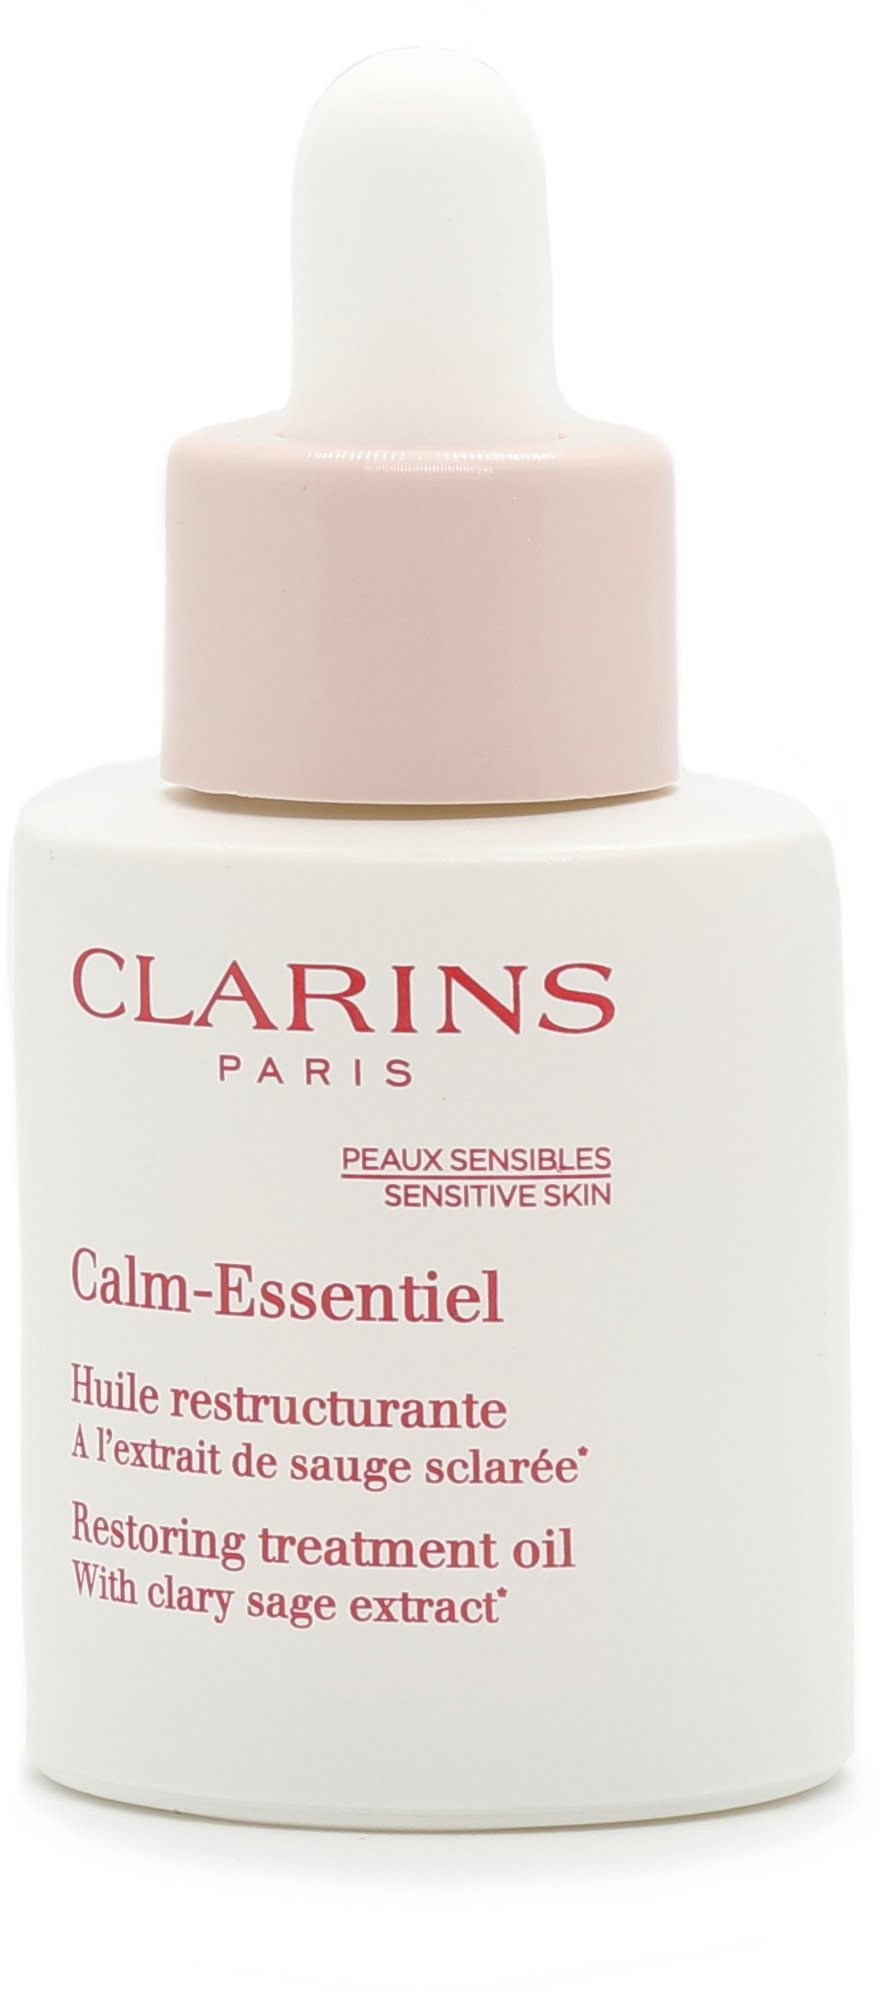 CLARINS Calm-Essentiel helyreállító kezelőolaj 30 ml